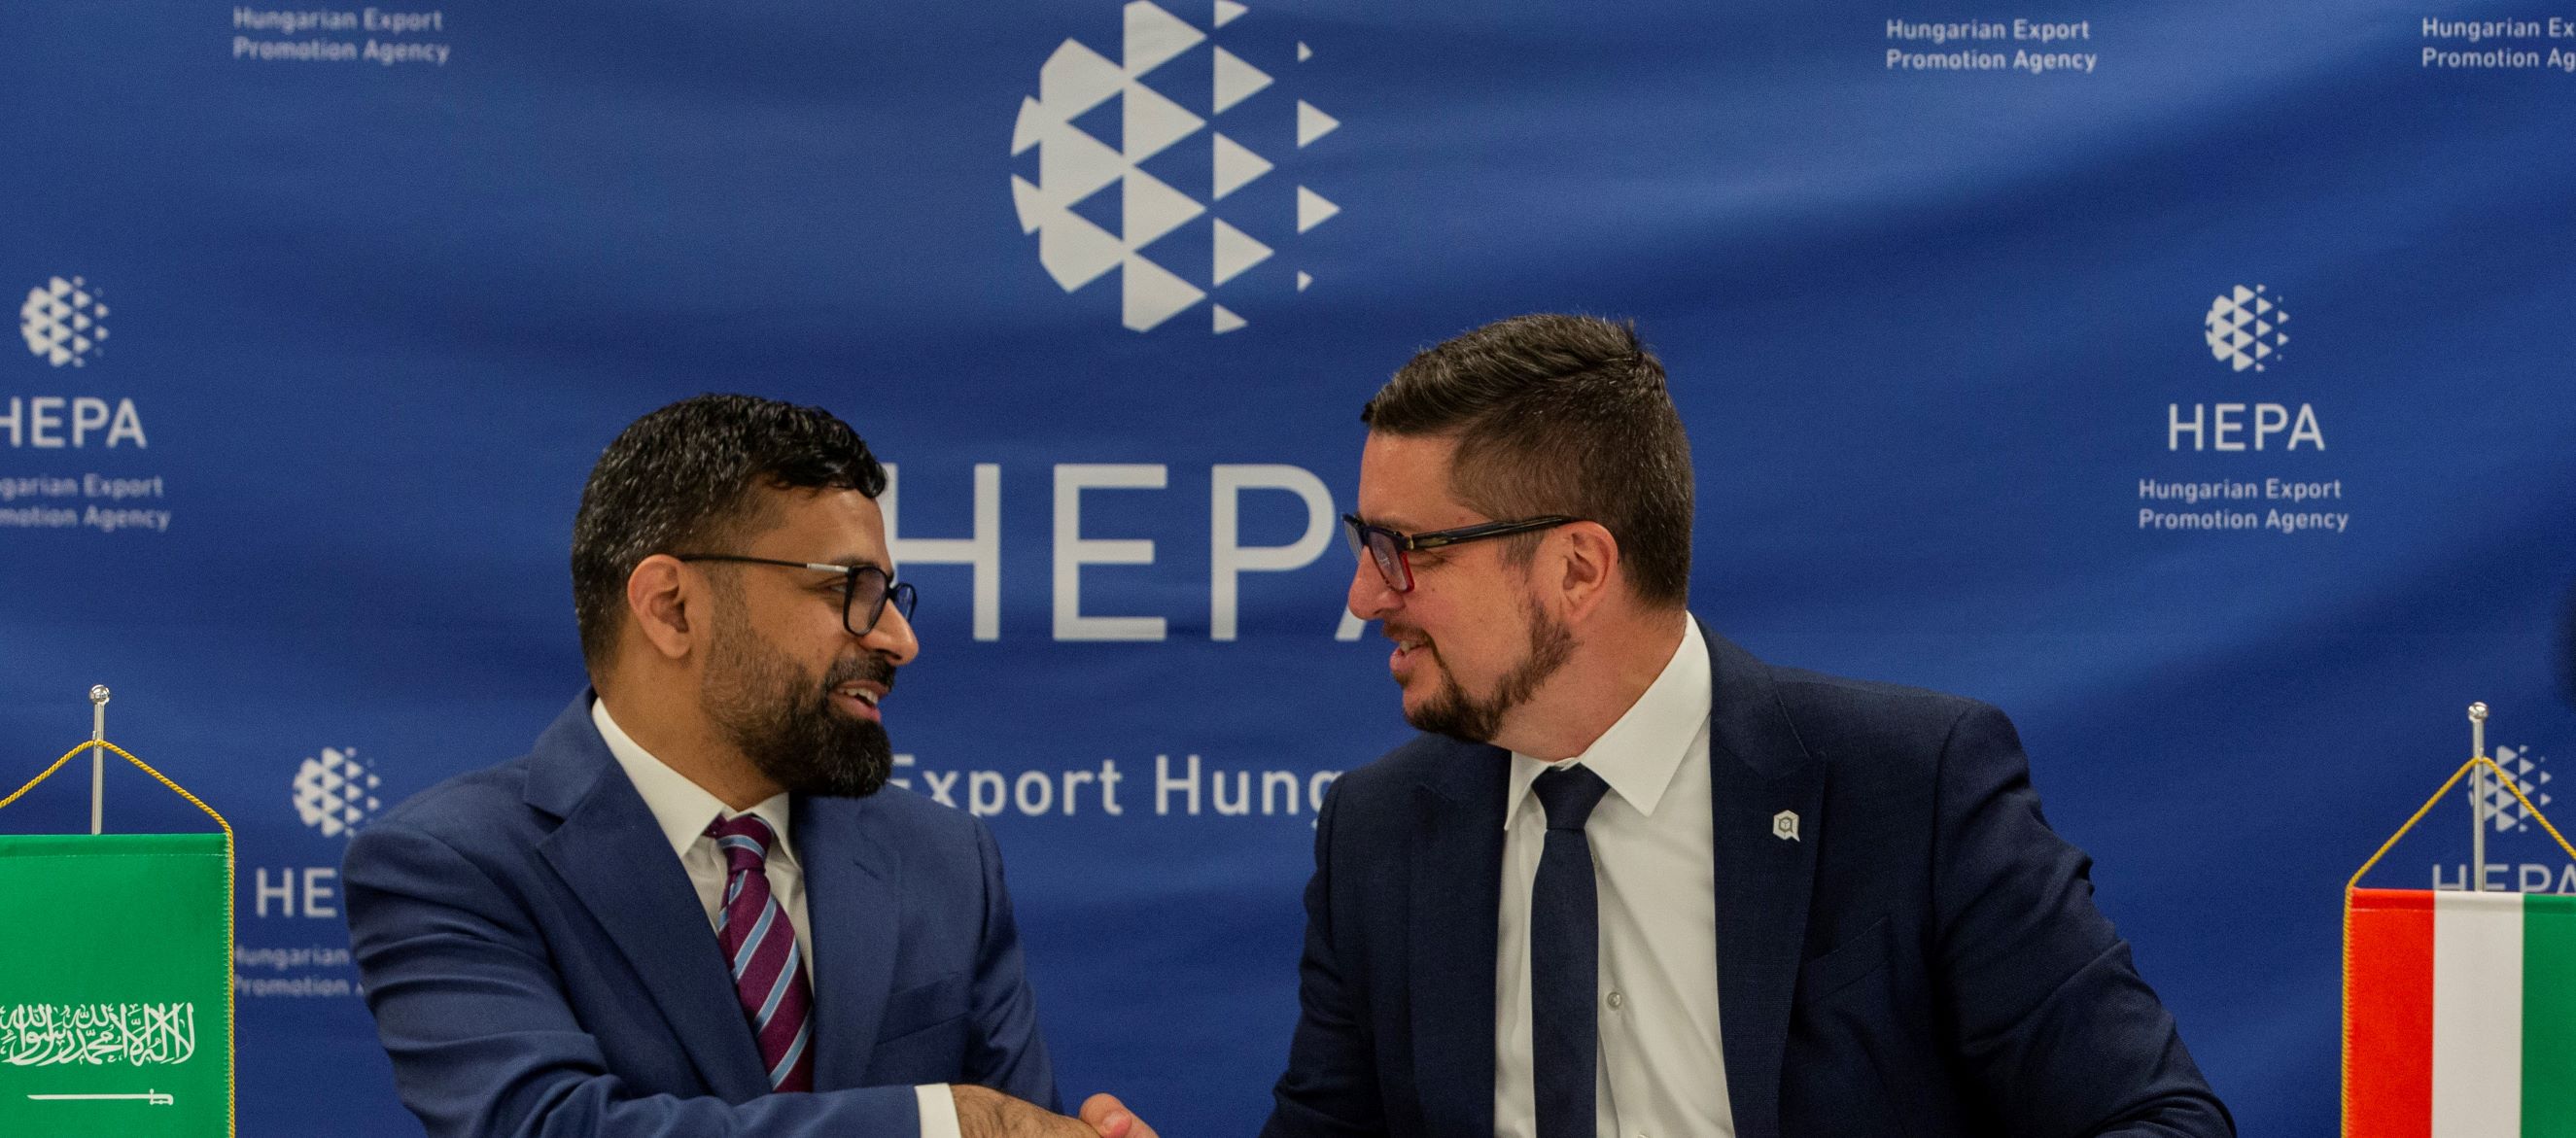 Egy vezető magyar kiberbiztonsági cég a szaúd-arábiai piacon hajt végre akvizíciót a Külgazdasági és Külügyminisztérium és a HEPA Magyar Exportfejlesztési Ügynökség közreműködésével